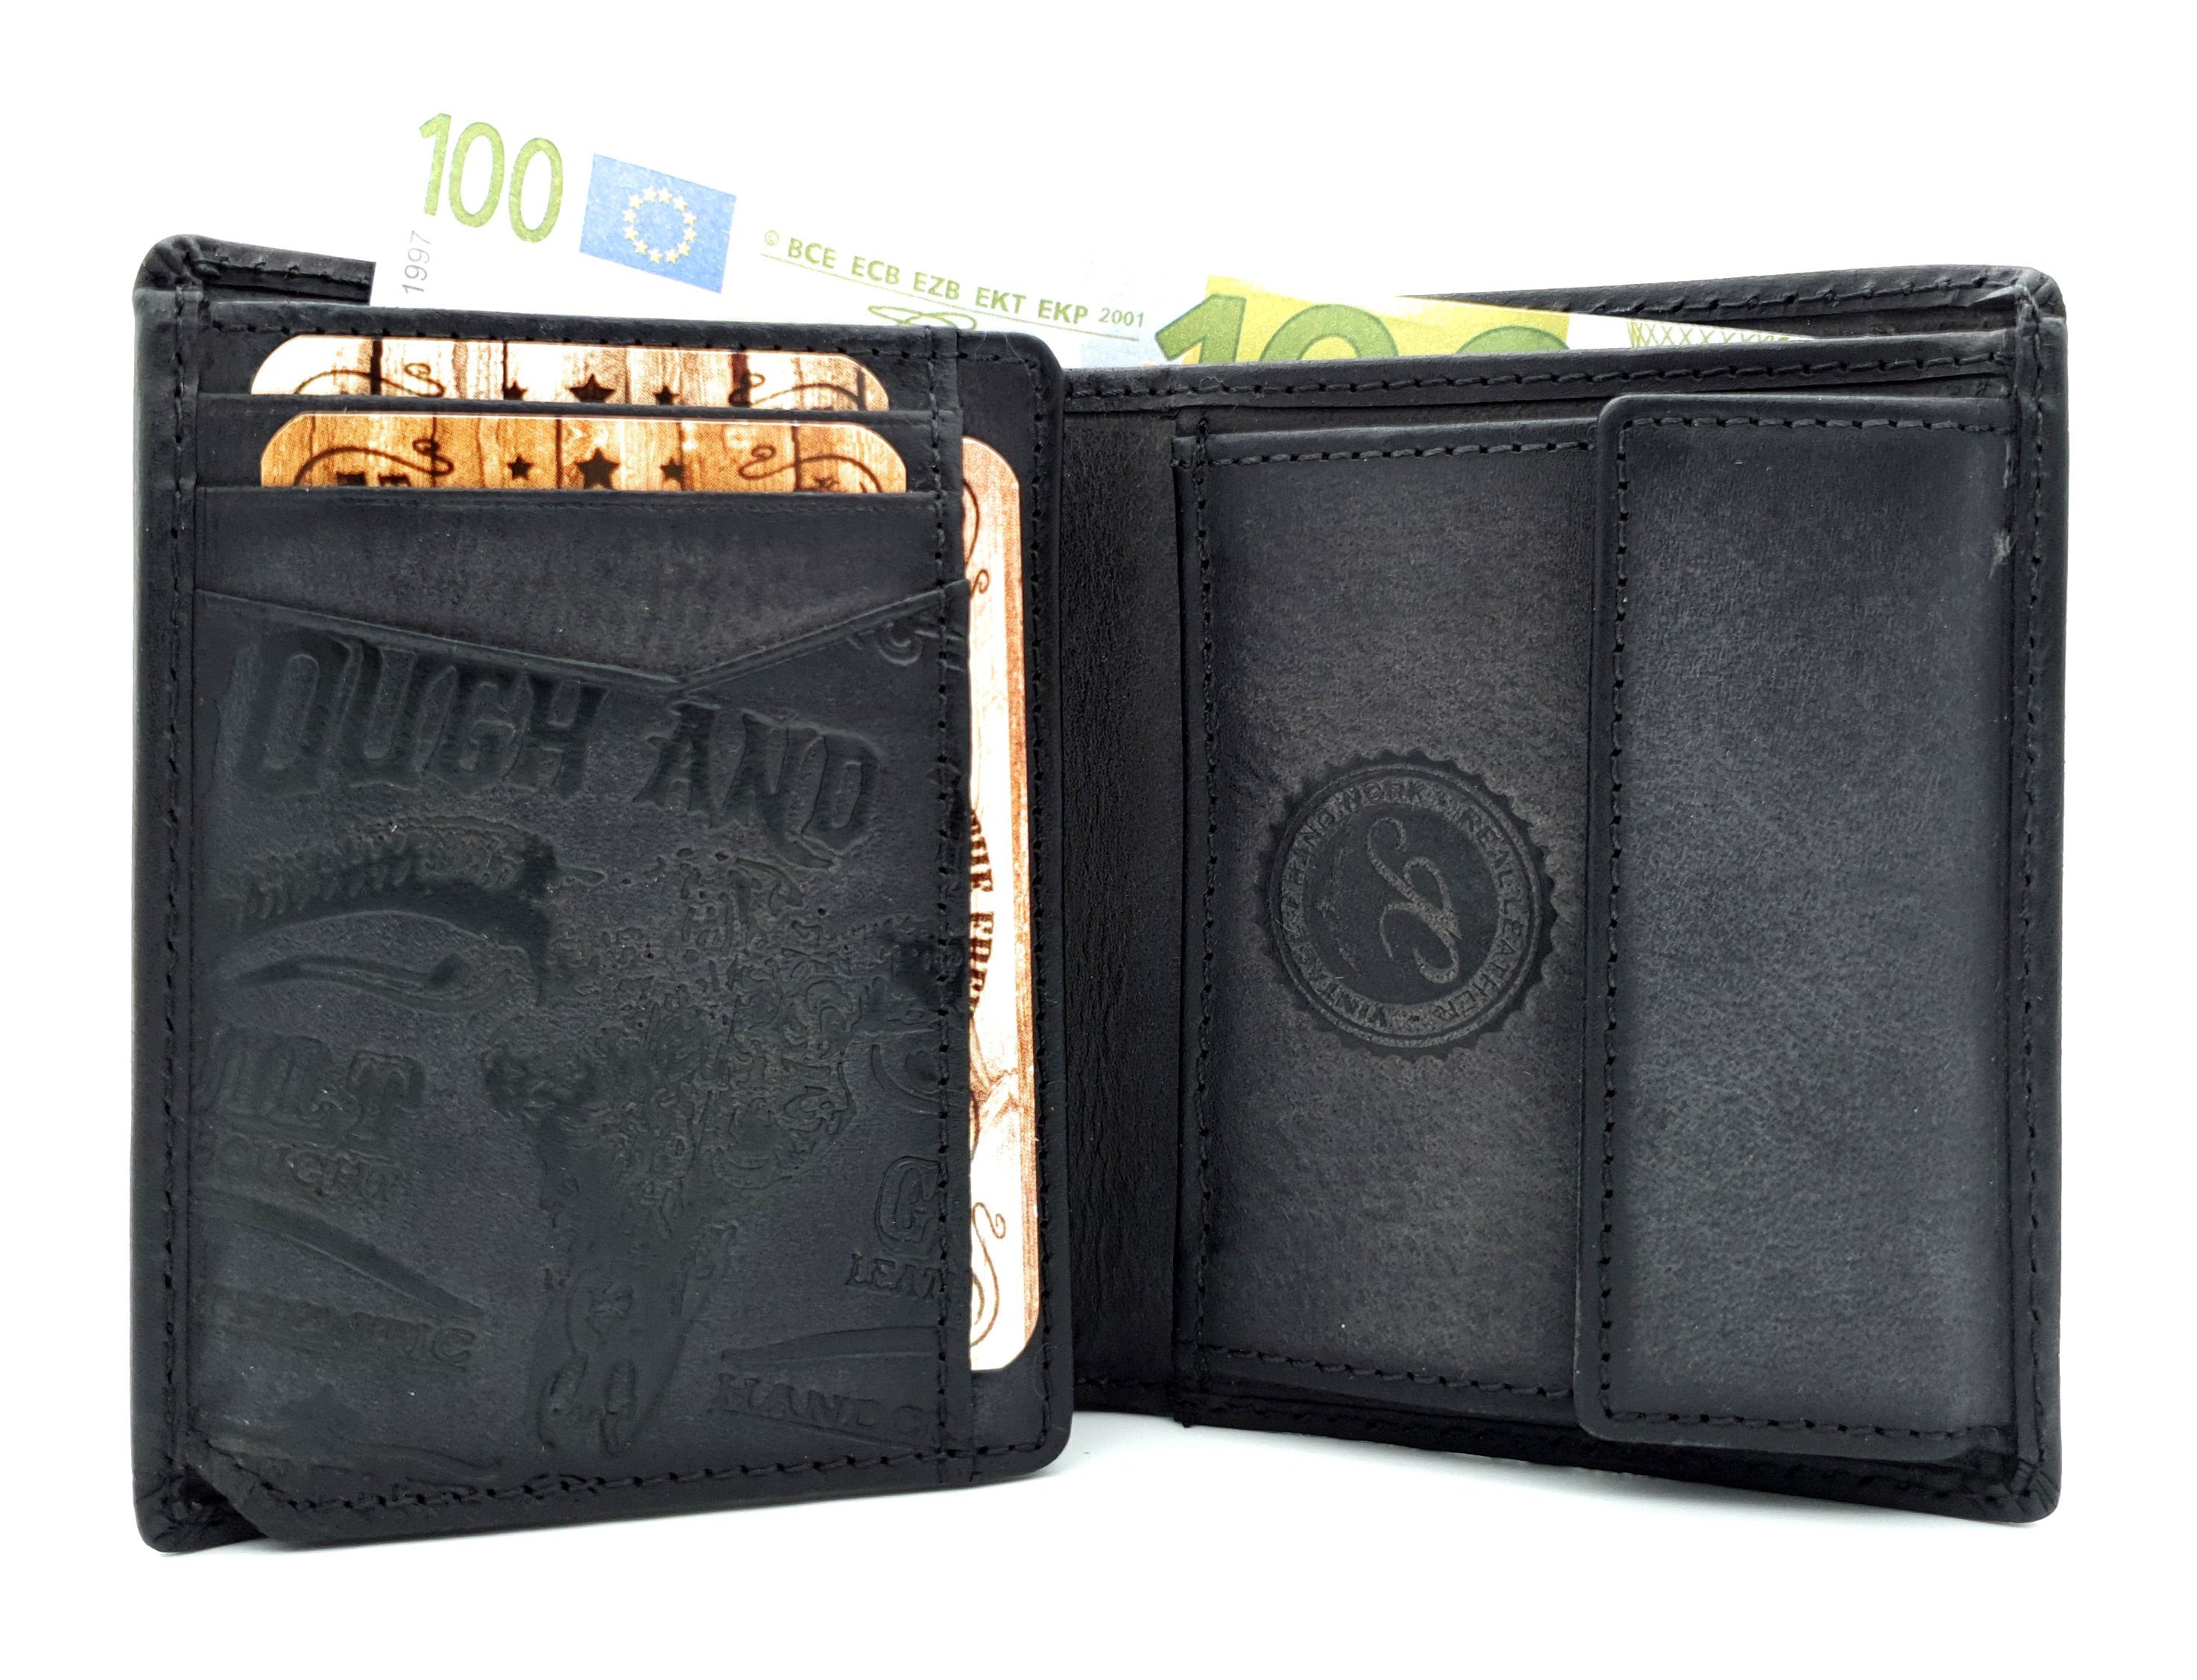 Geldbörse CLUB Leder Rough RFID Schädel echt Longhorn Tough geprägter Portemonnaie & mit JOCKEY Schutz,